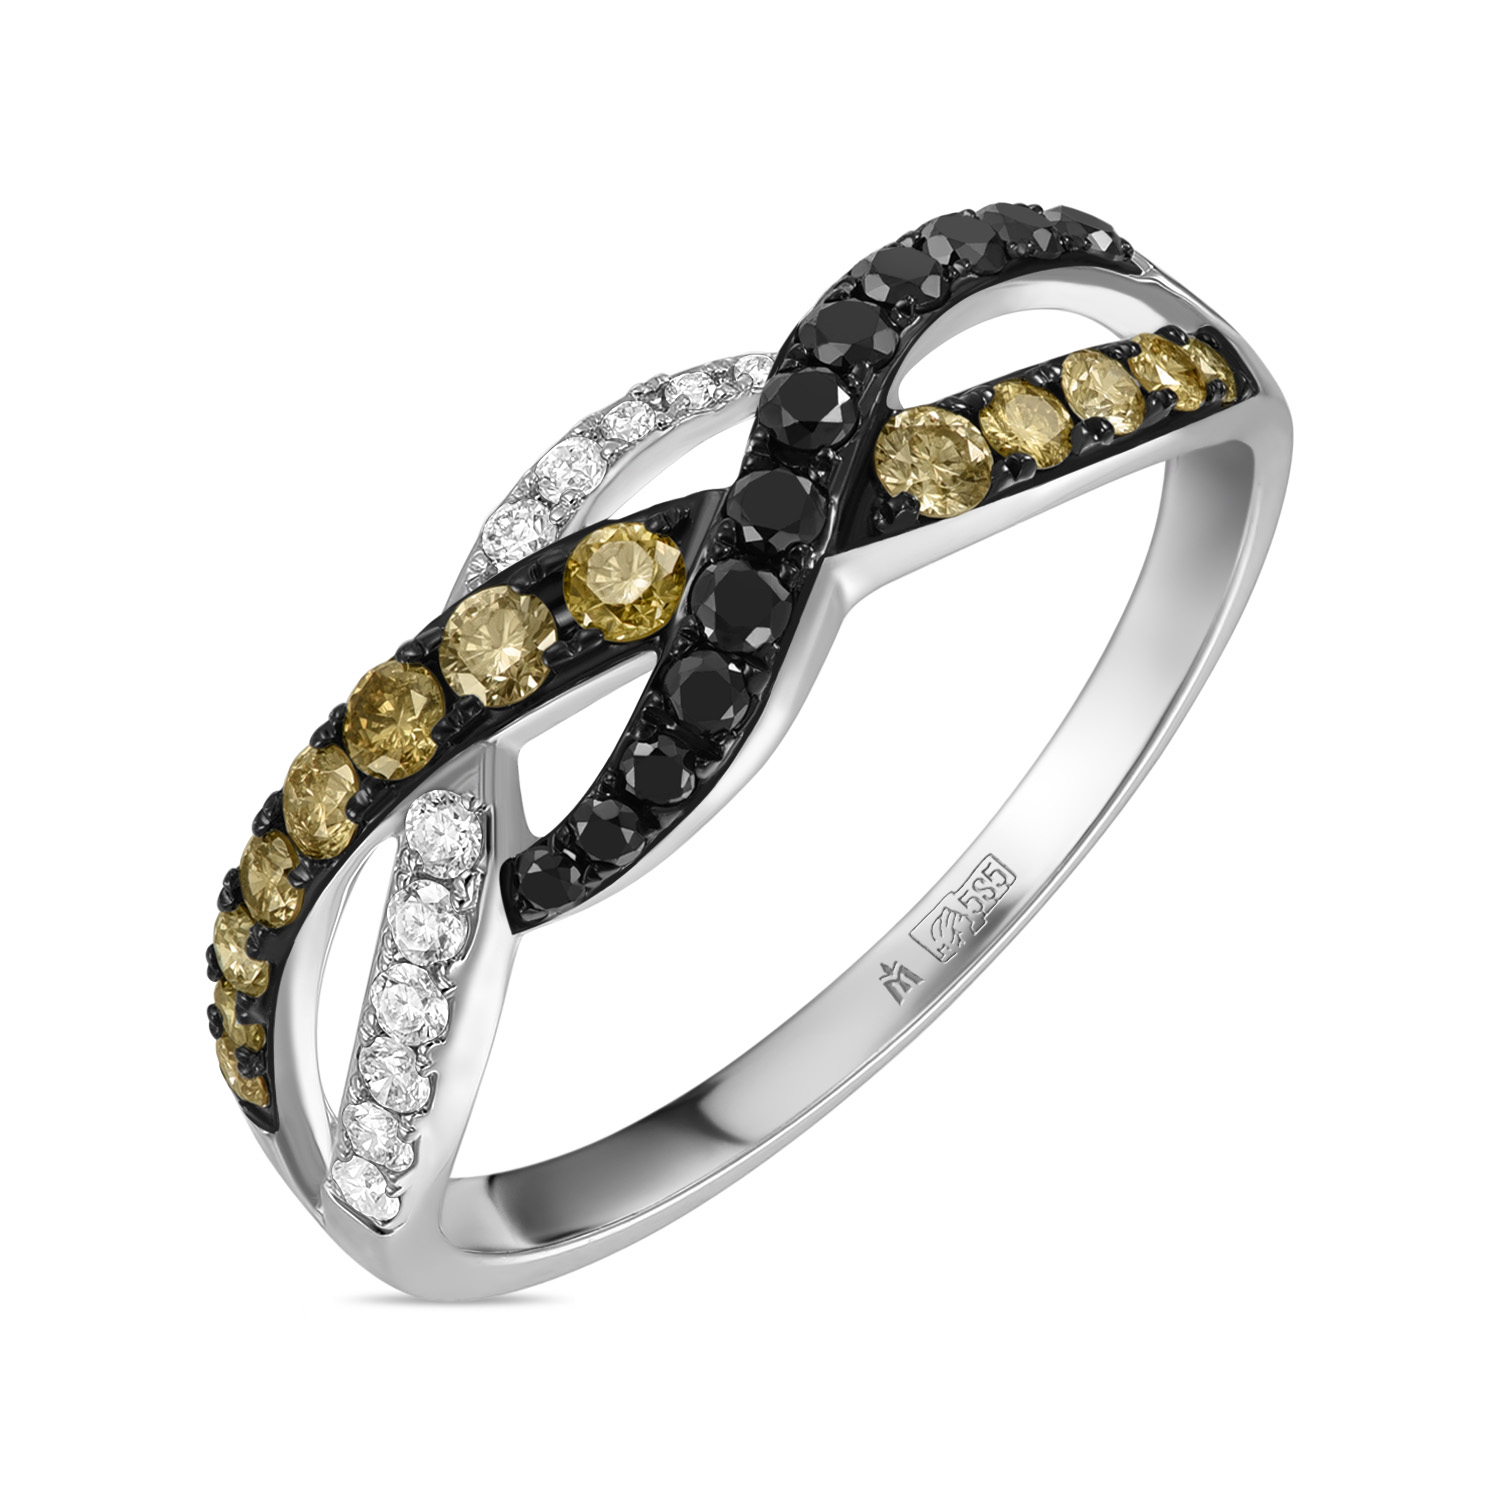 Кольца МЮЗ Кольцо с бриллиантами и облагороженными бриллиантами кольца miuz diamonds r2018 rr01049adi r17